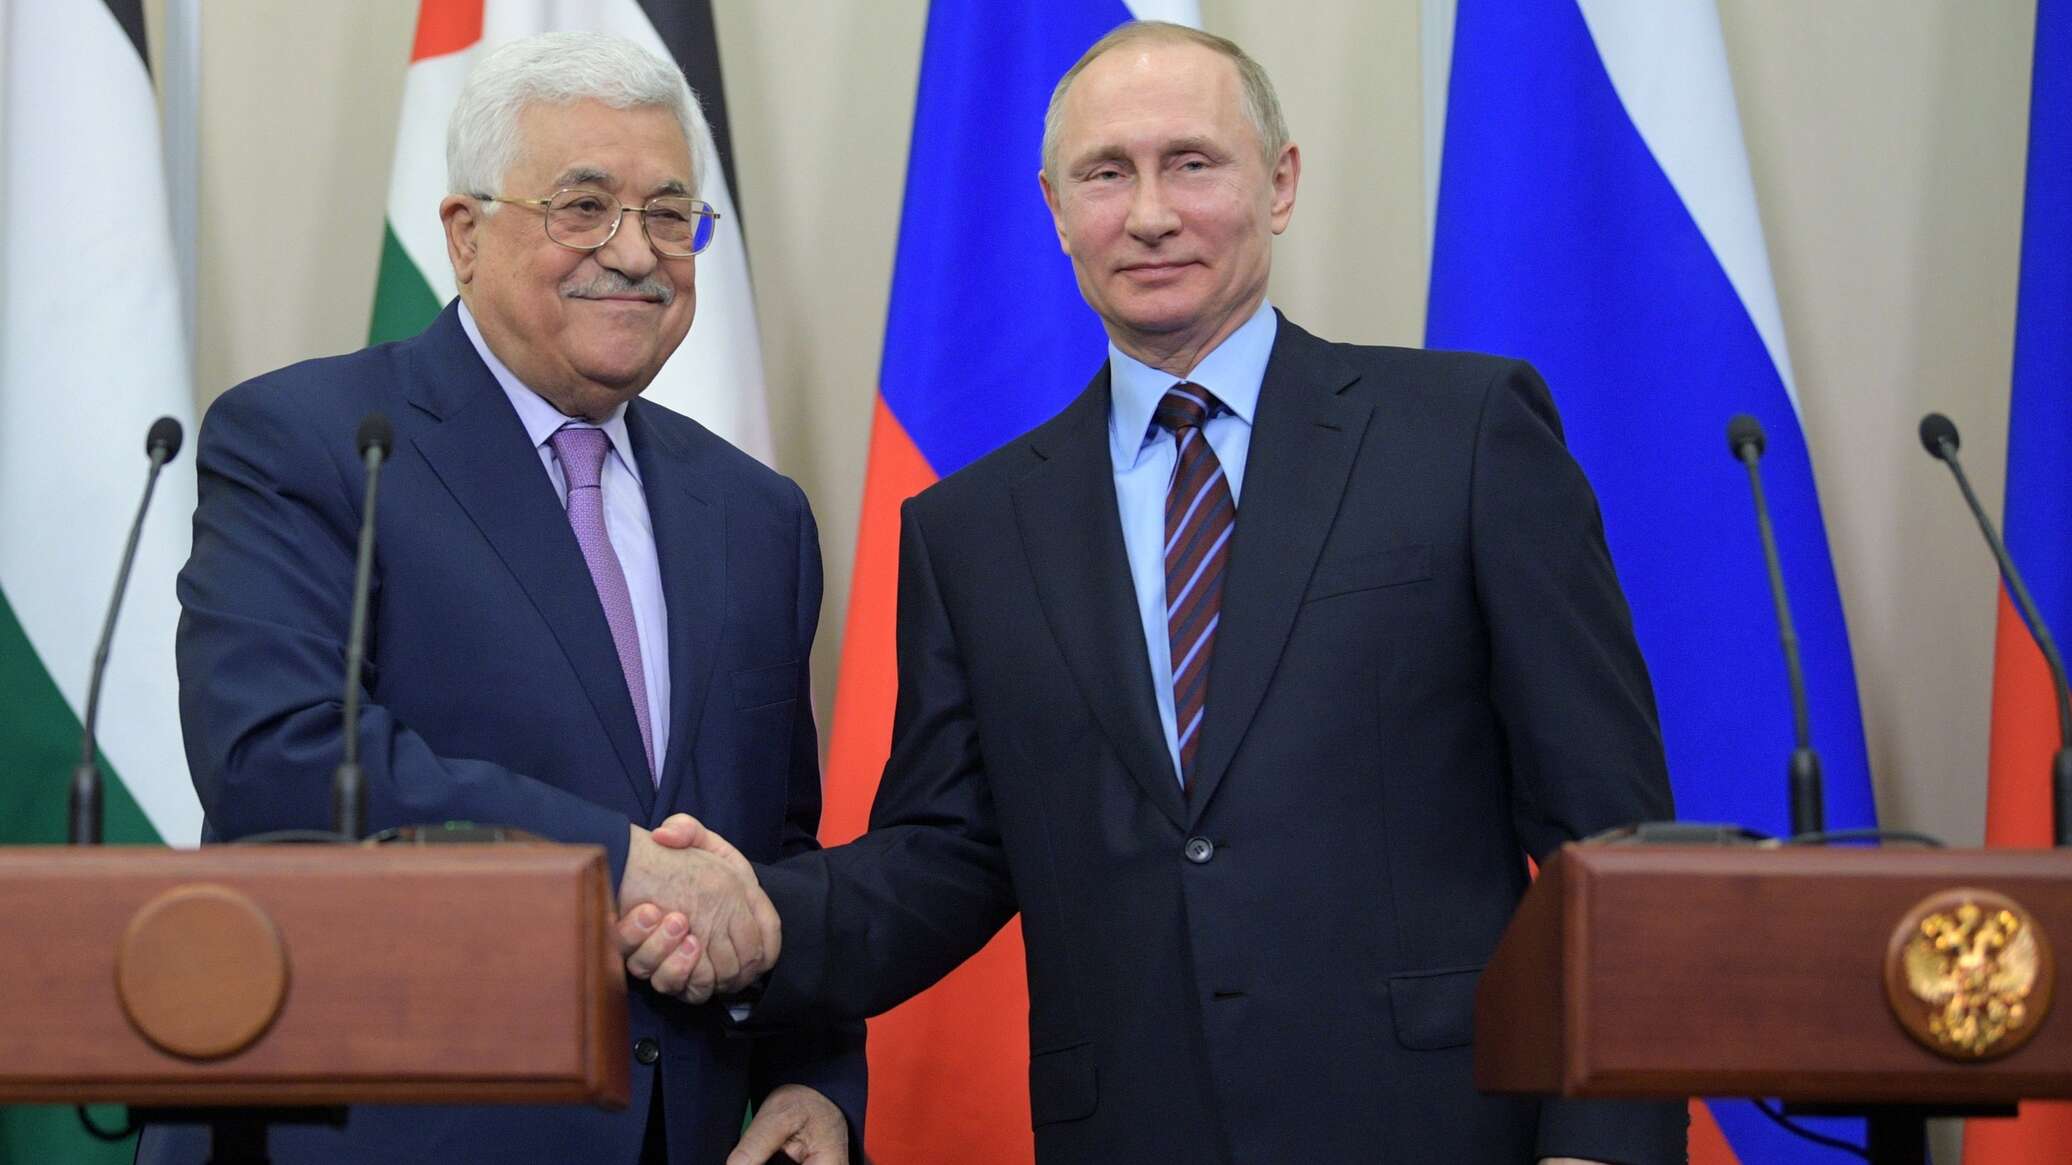 عباس يهنئ بوتين بإعادة انتخابه رئيسا لروسيا